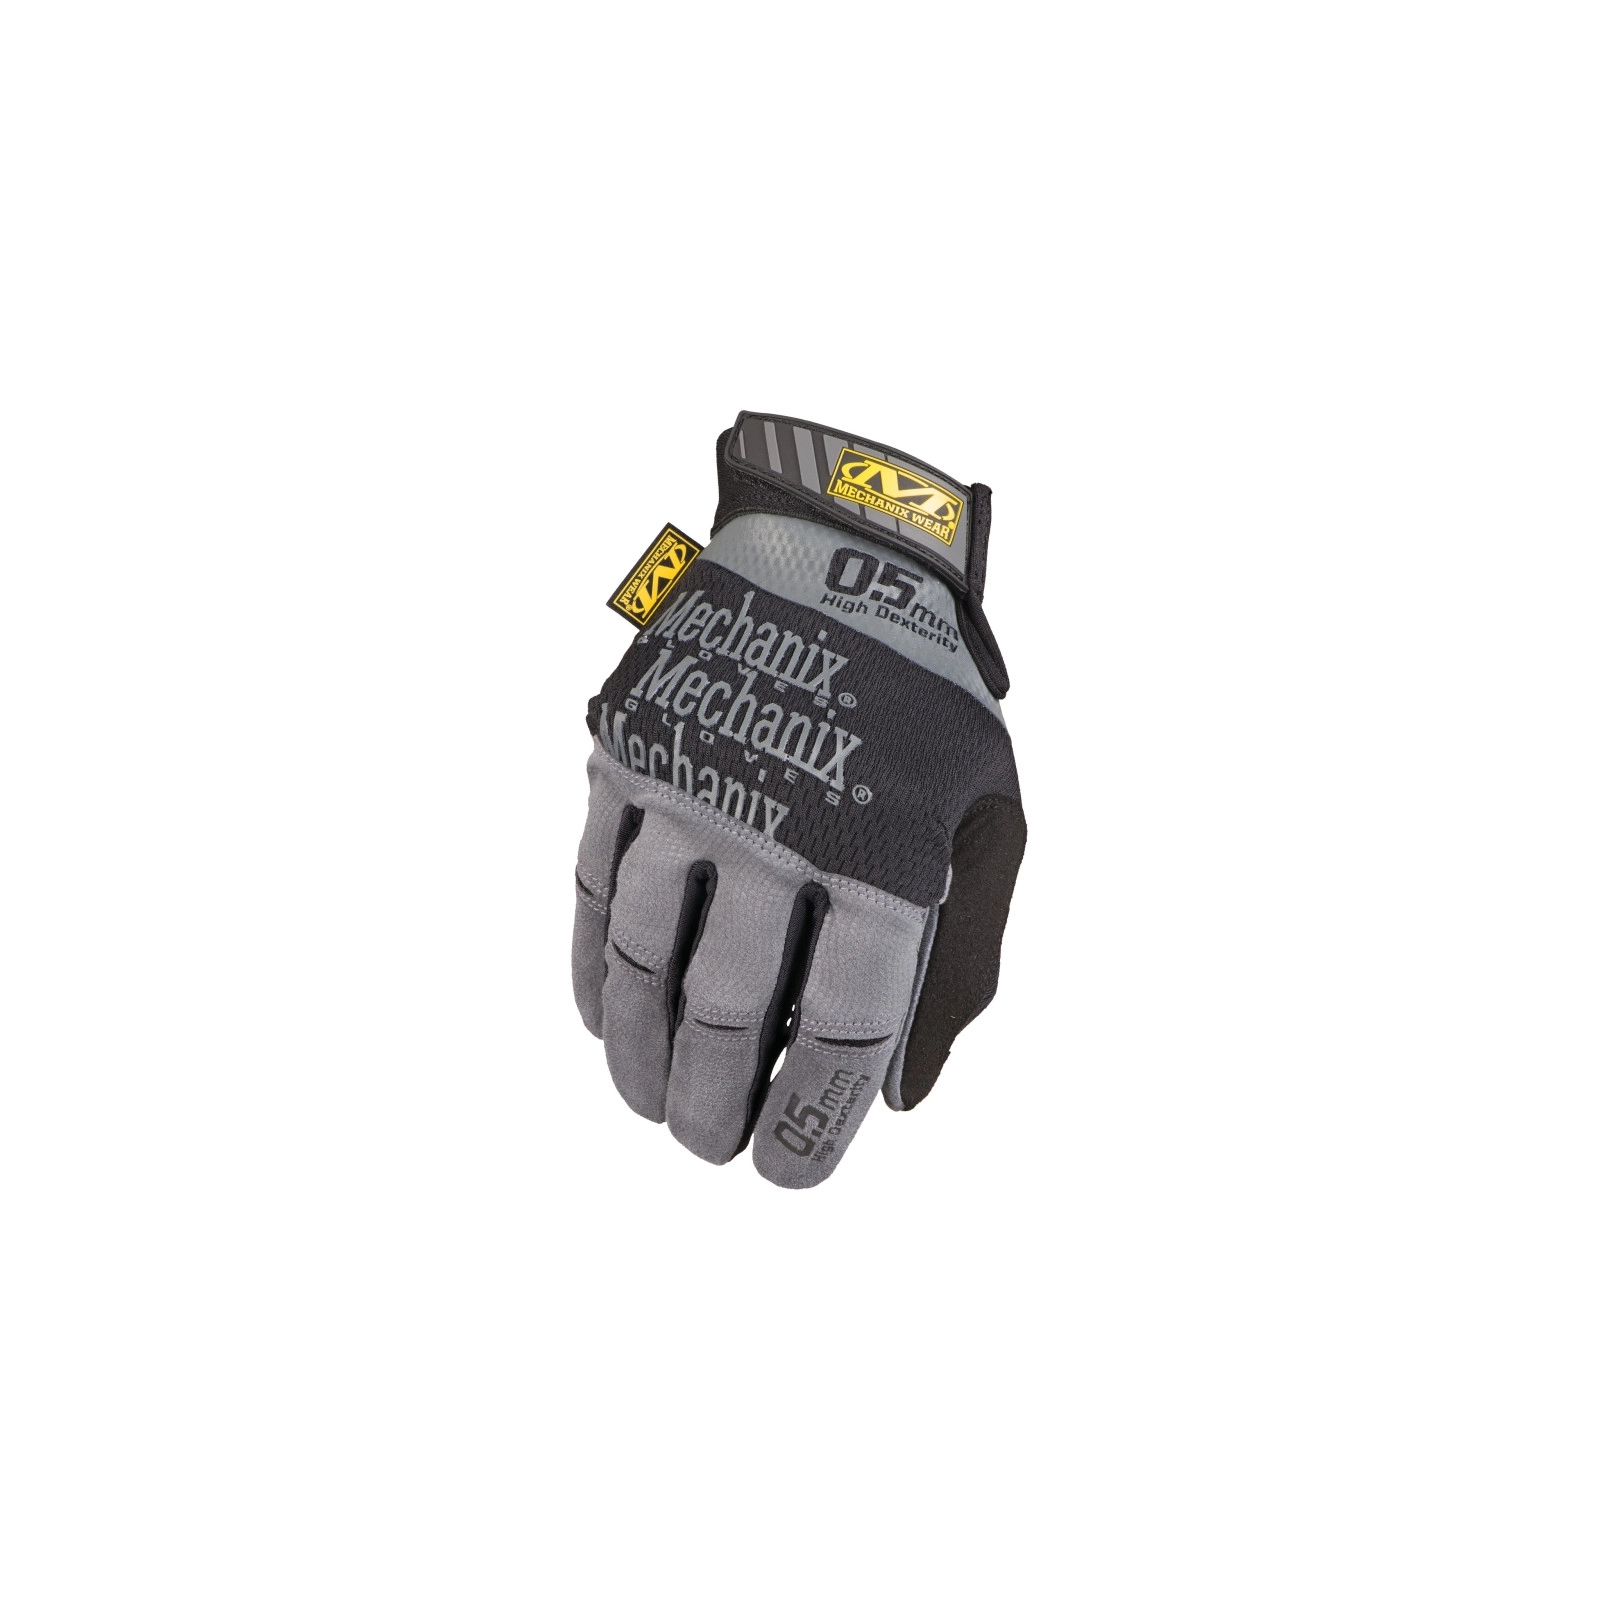 Захисні рукавиці Mechanix Specialty Hi-Dexterity 0.5 (MD) (MSD-05-009)